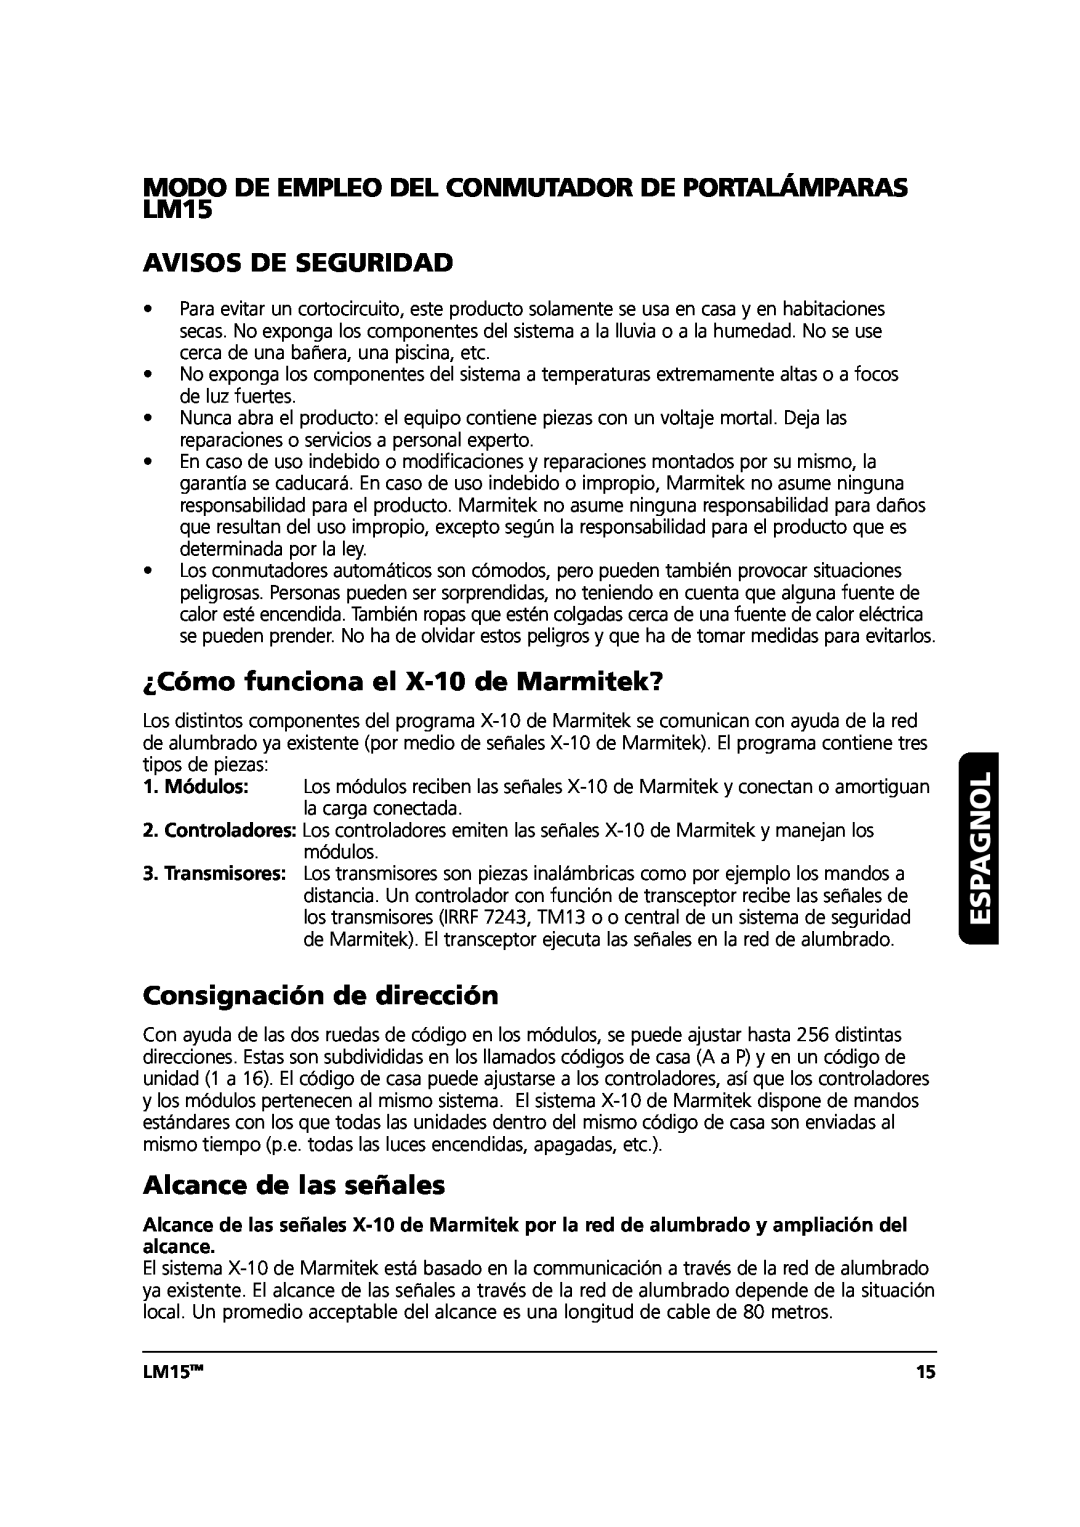 Marmitek Espagnol, Avisos De Seguridad, ¿Cómo funciona el X-10de Marmitek?, Consignación de dirección, LM15TM 